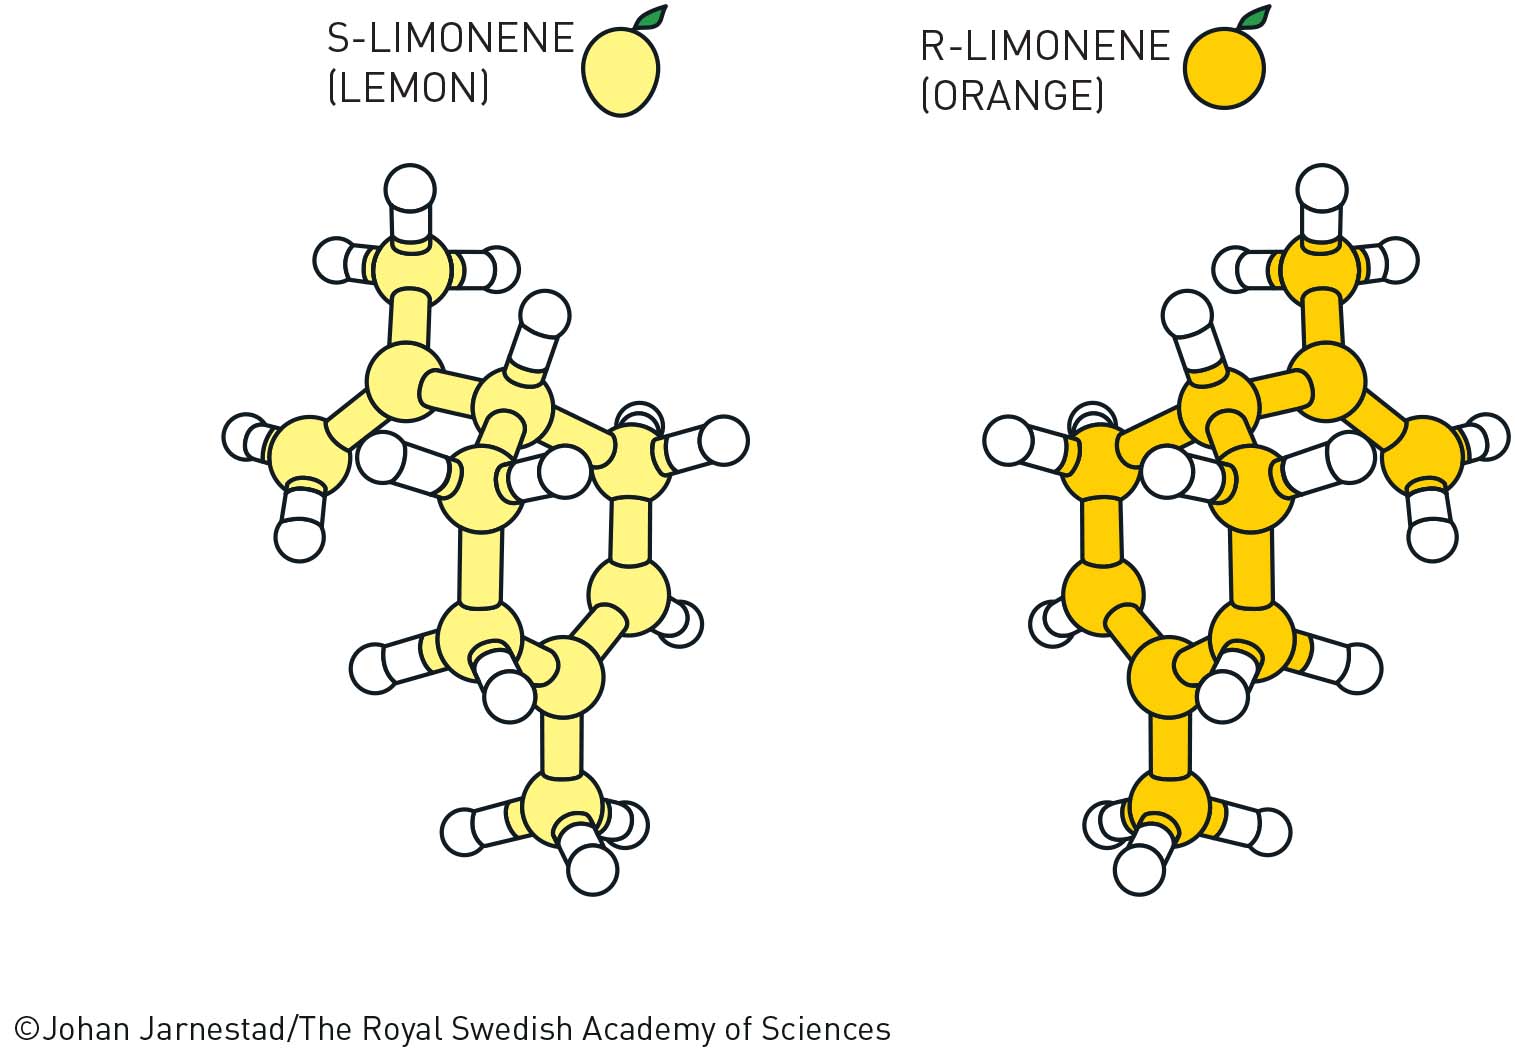 Нобелевскую премию по химии присудили за асимметрический органокатализ